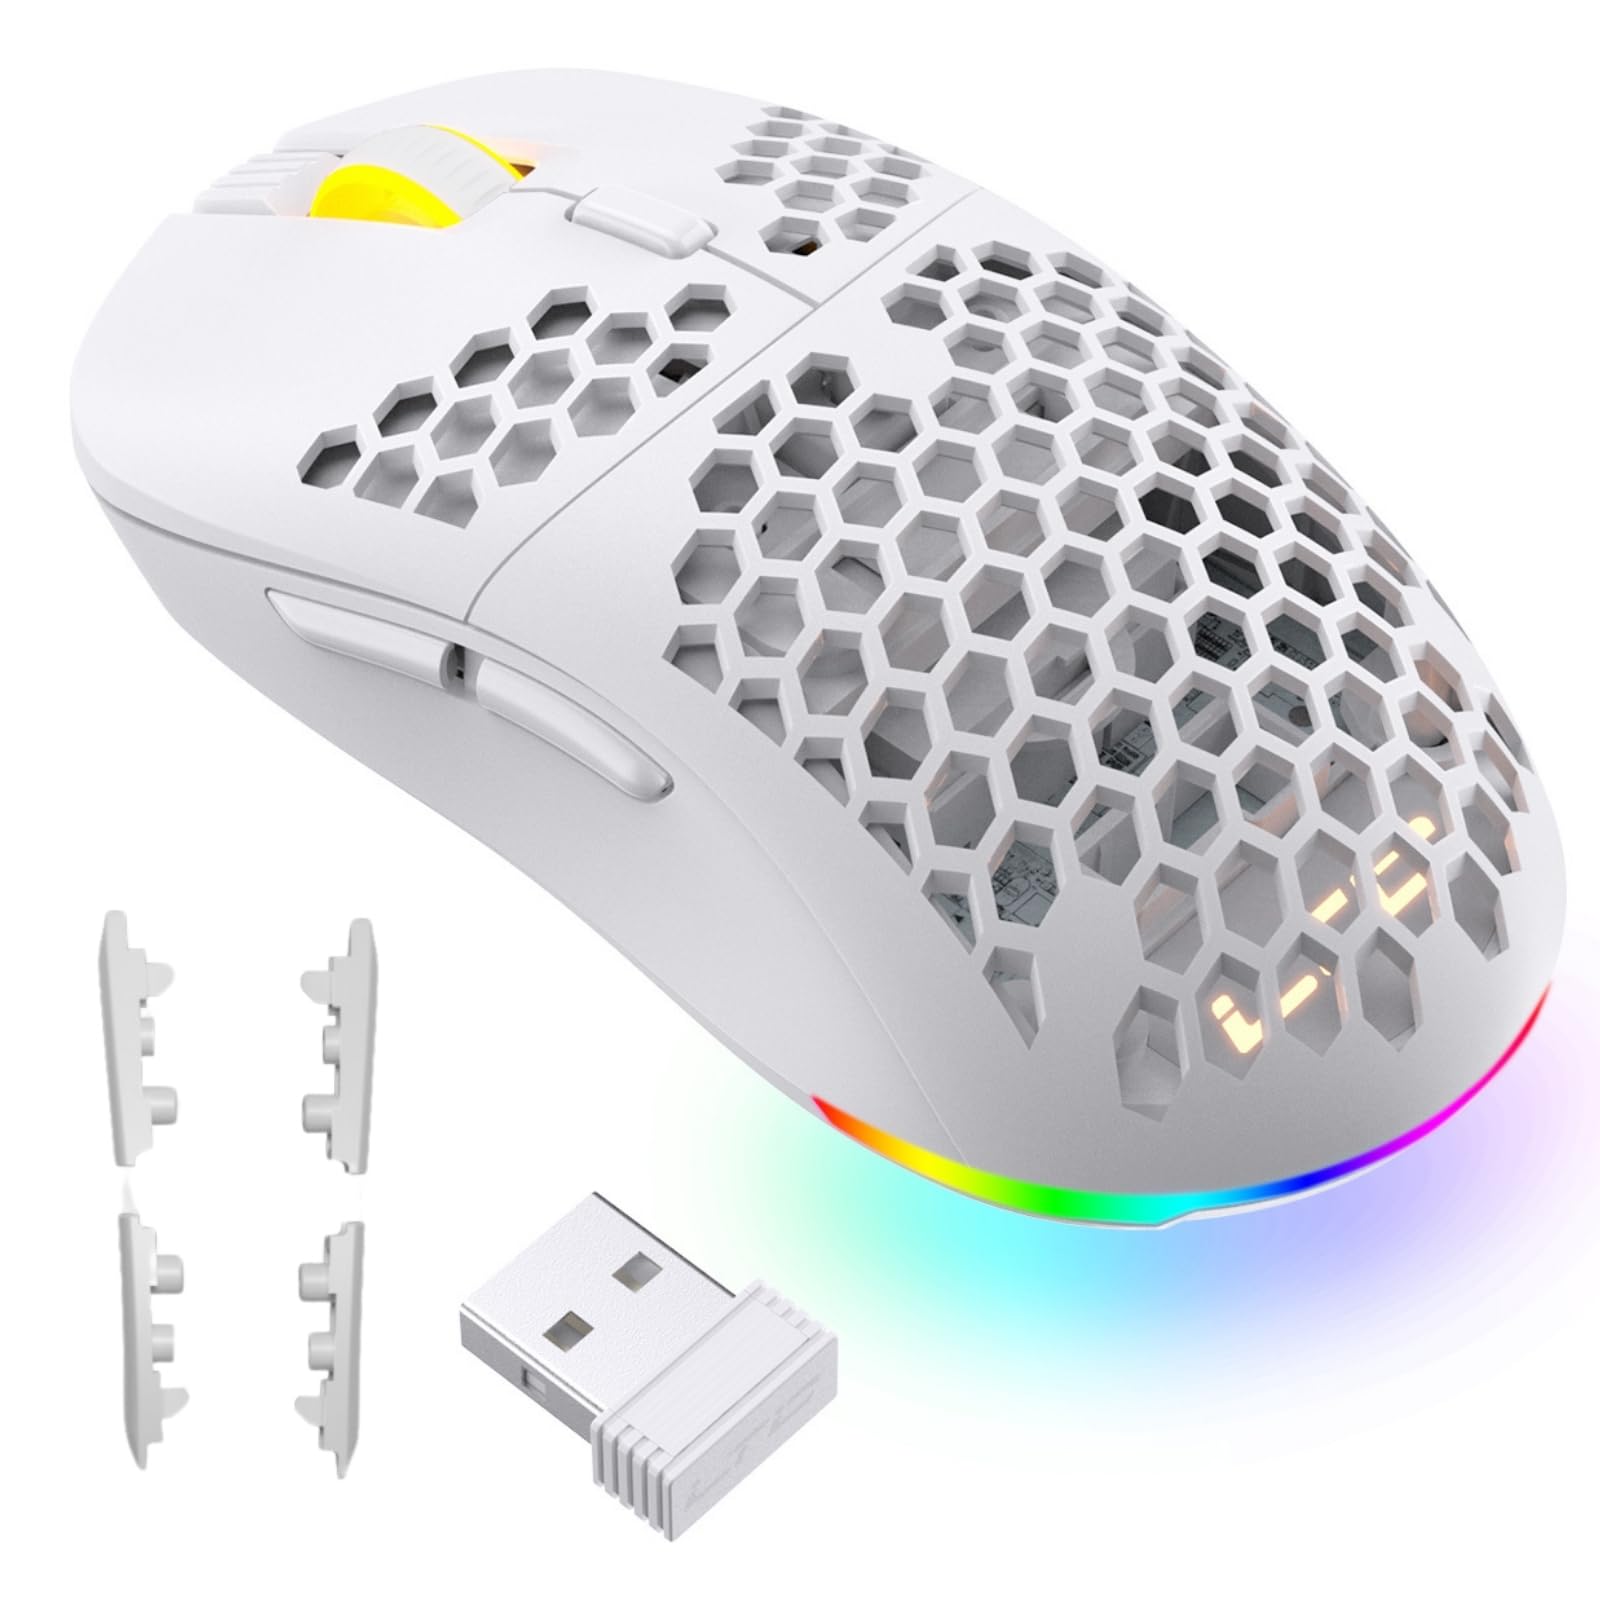 LTC Mosh Pit RGB Kabellose Gaming-Maus mit ultraleichtem Wabengehäuse,16.000 DPI einstellbar, ergonomische Form für Rechts- oder Linkshänder, komfortable 2,4G Mäuse für PC/Mac/Laptop, Weiß